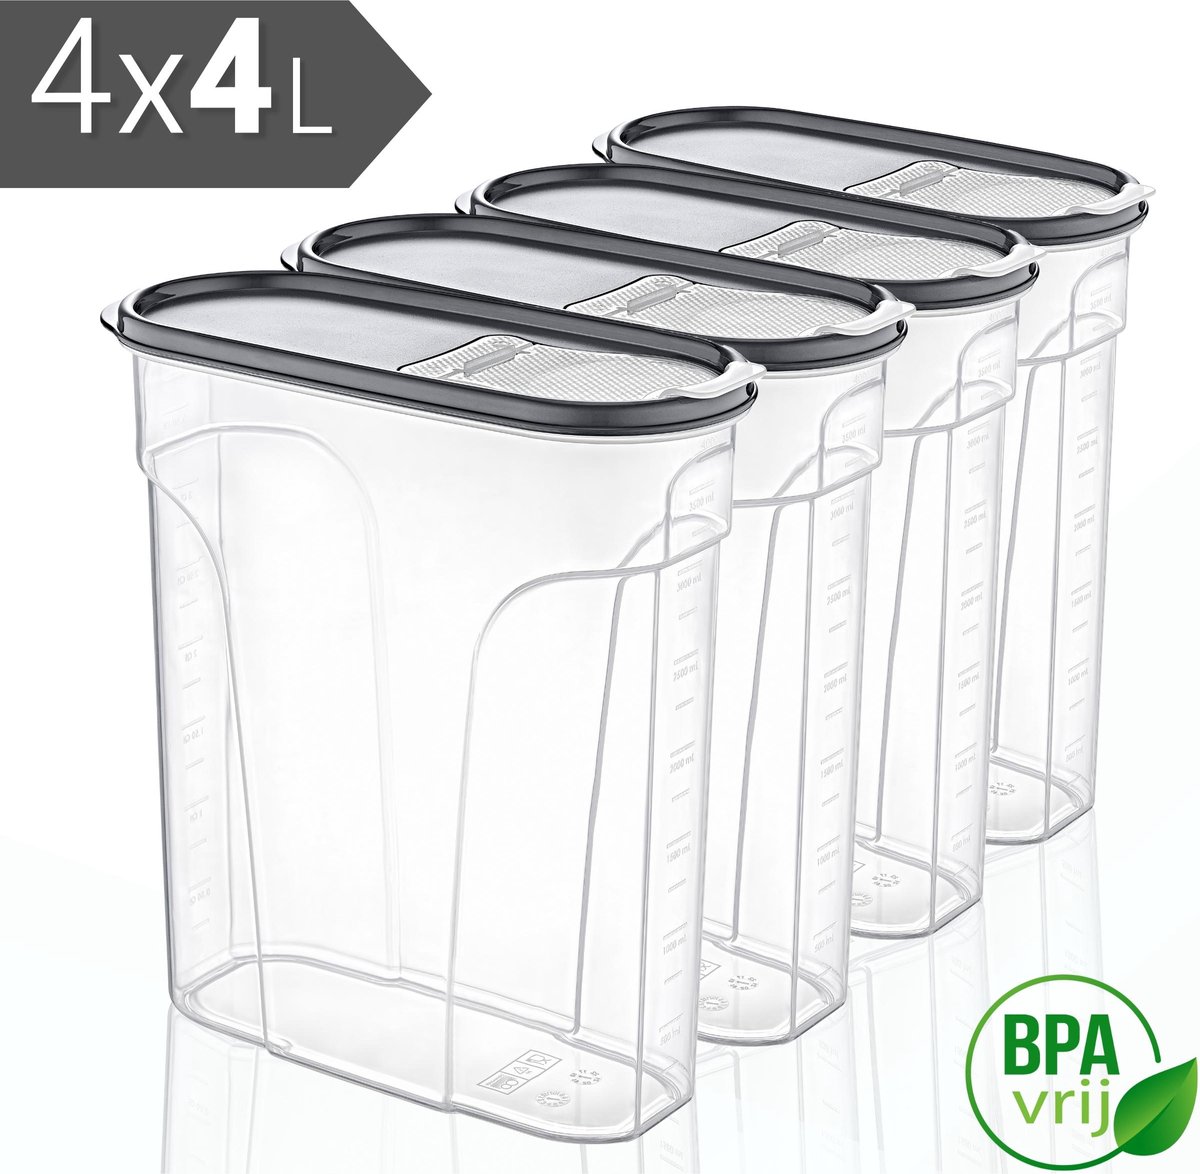 Voorraadpotten Set van 4 - 4x4L met grijze deksel Voorraadbussen - Vershouddoos - 4 Stuks - BPA vrij - Kunststof